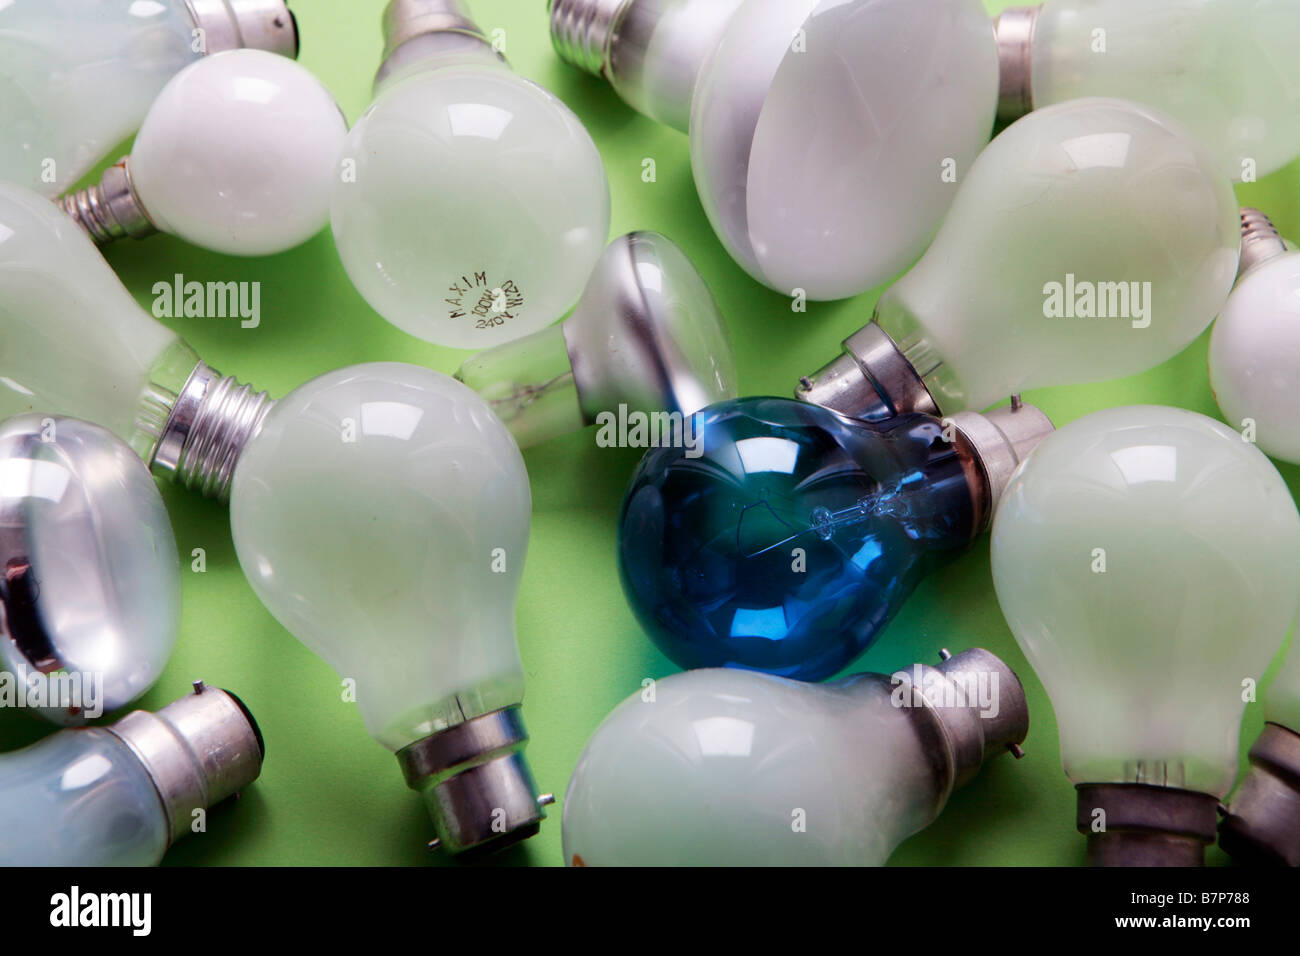 Il filamento delle lampadine - in fase di graduale eliminazione a favore di nuove lampadine a risparmio energetico. Foto Stock